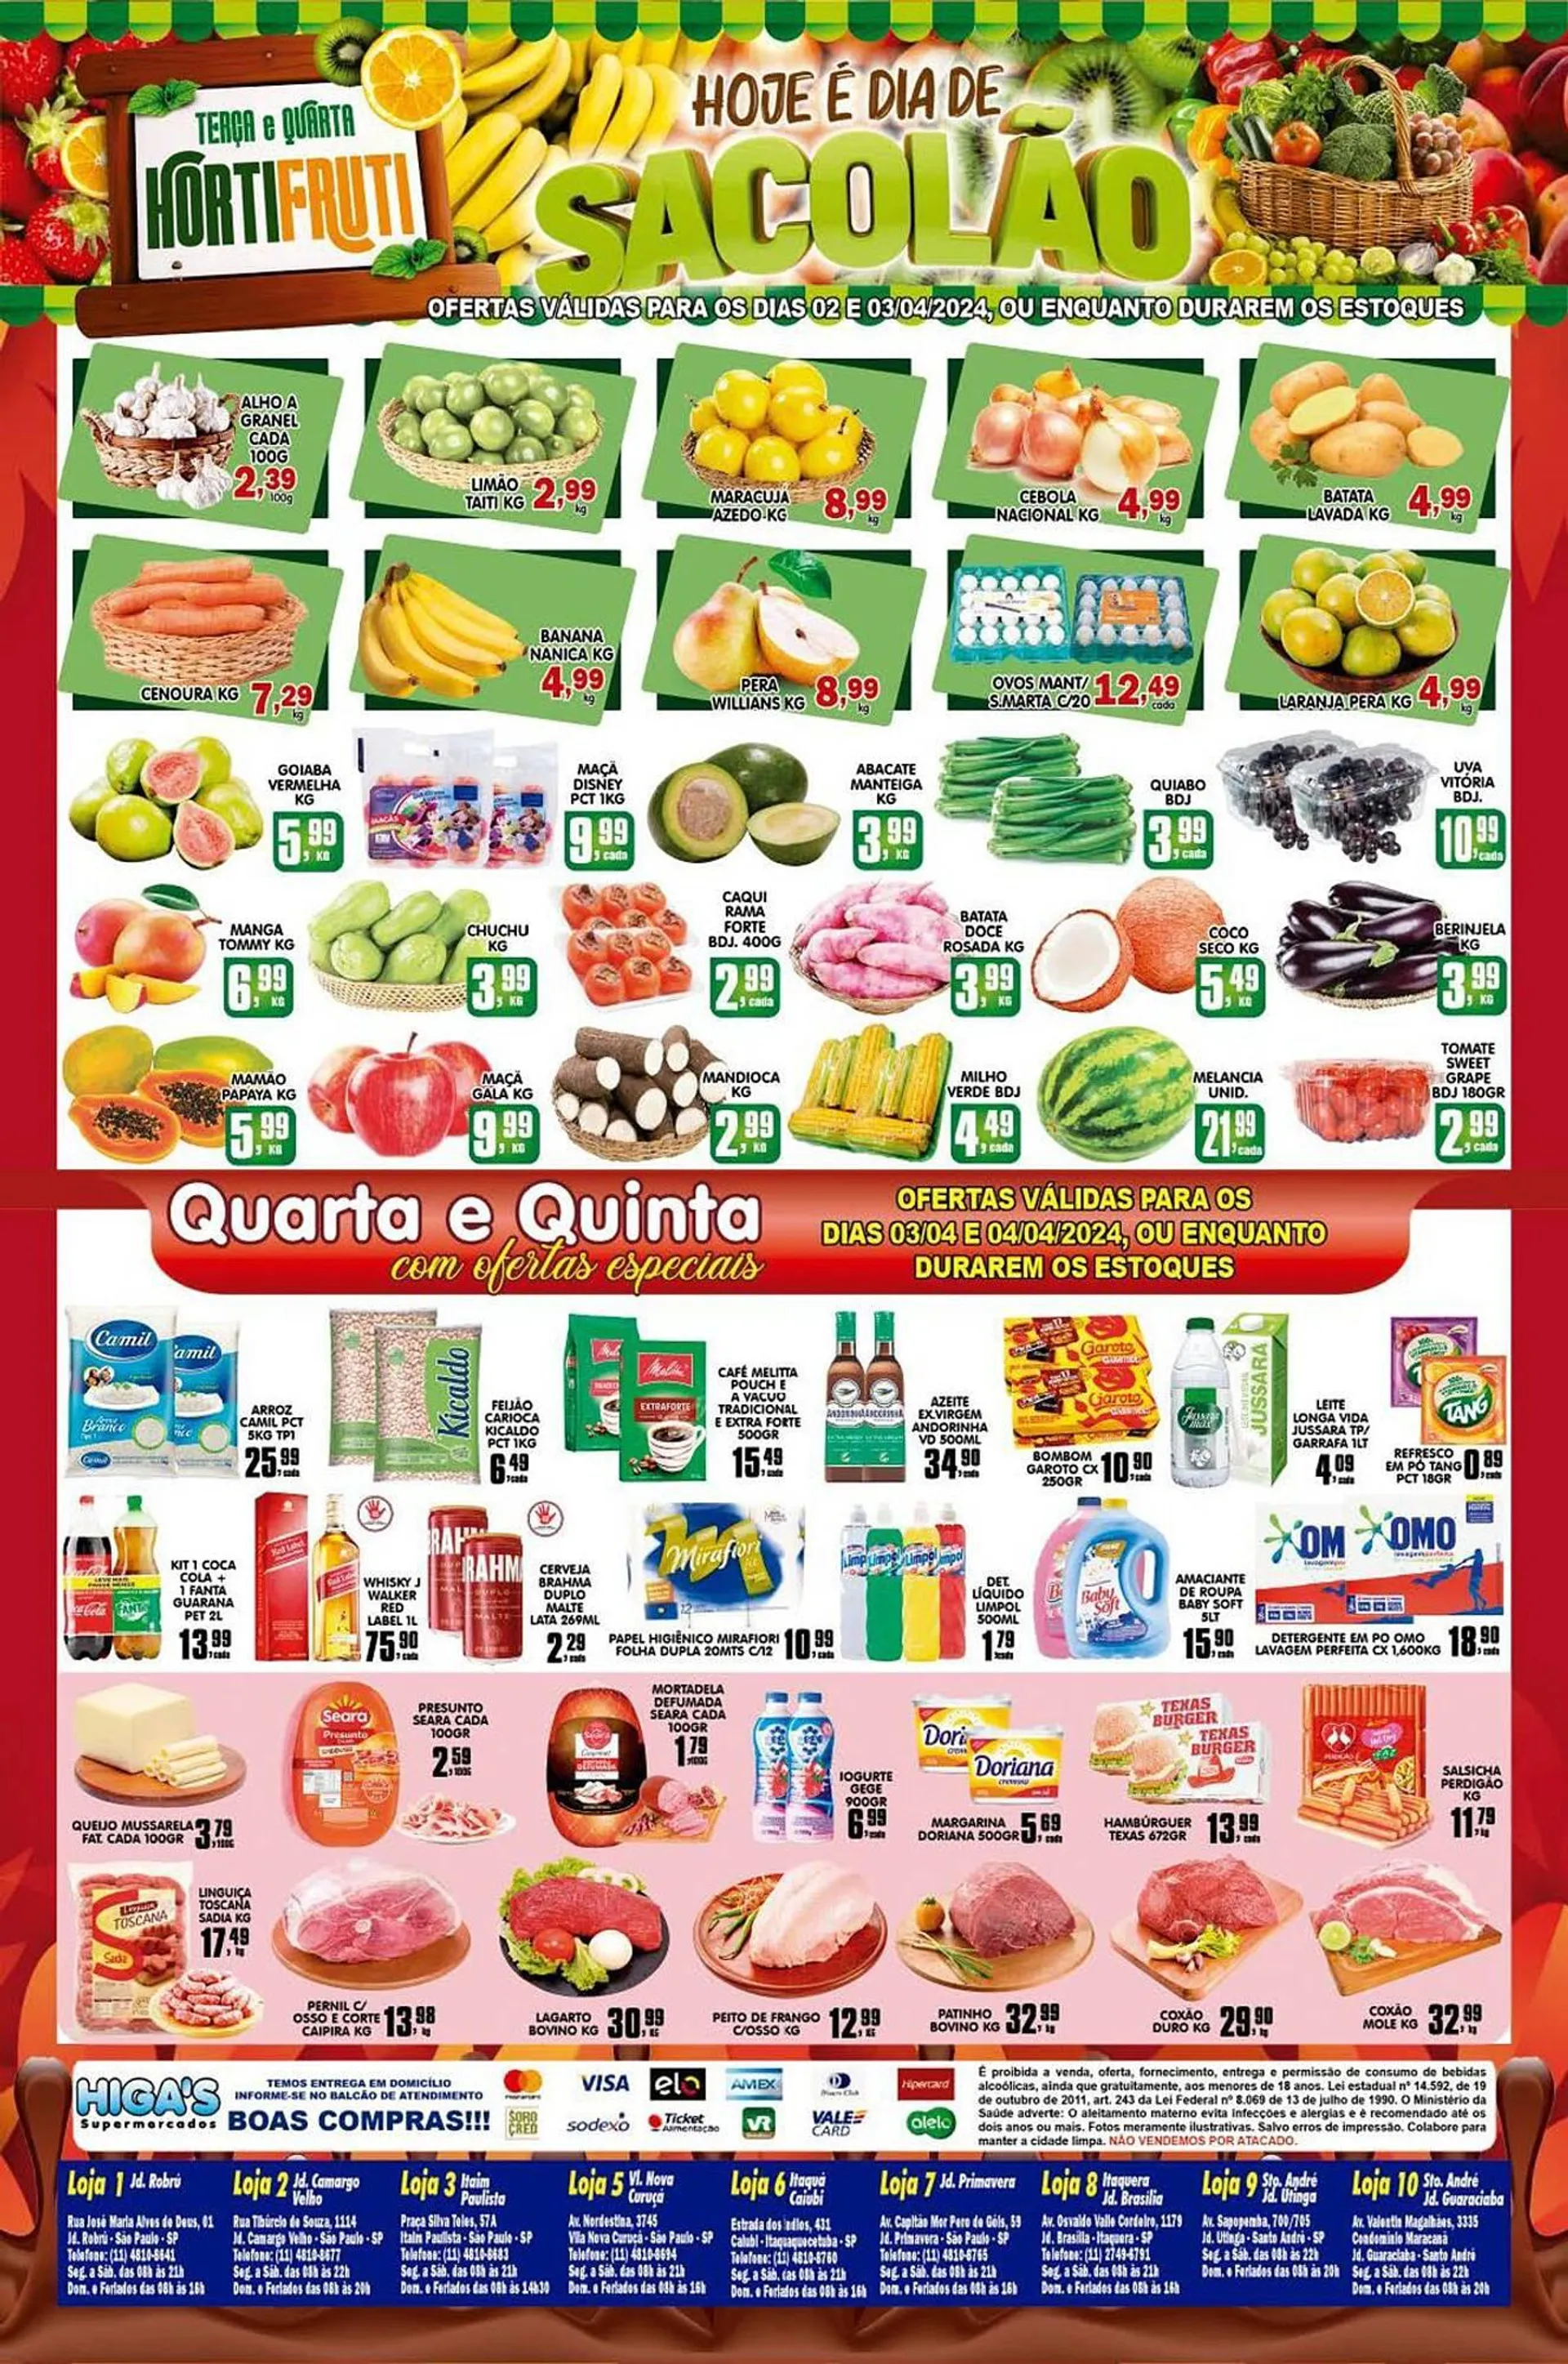 Encarte de Catálogo Higa's Supermercado 2 de abril até 9 de abril 2024 - Pagina 4